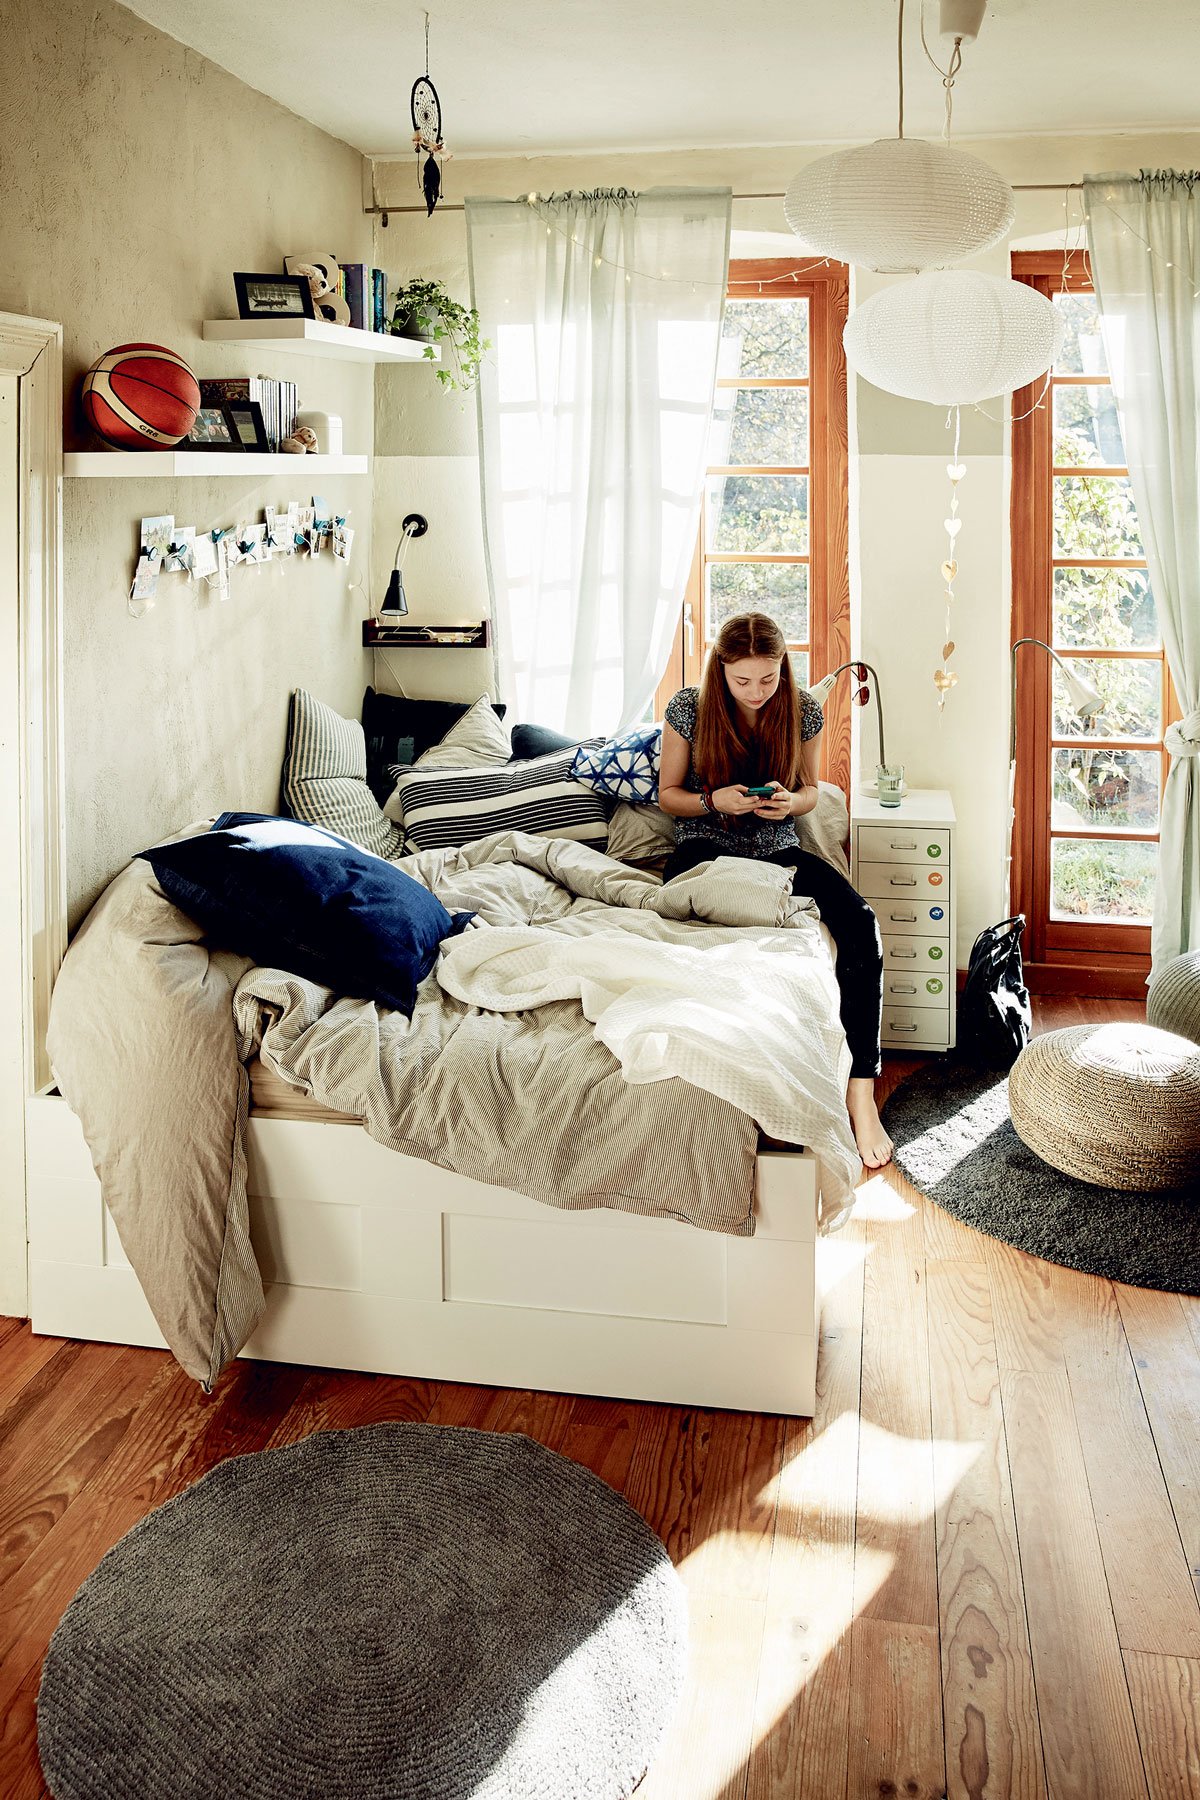 dětský pokoj s bílou postelí a povlečením v přírodních barvách, s policemi, nočním stolečkem a pleteným přírodným pufem